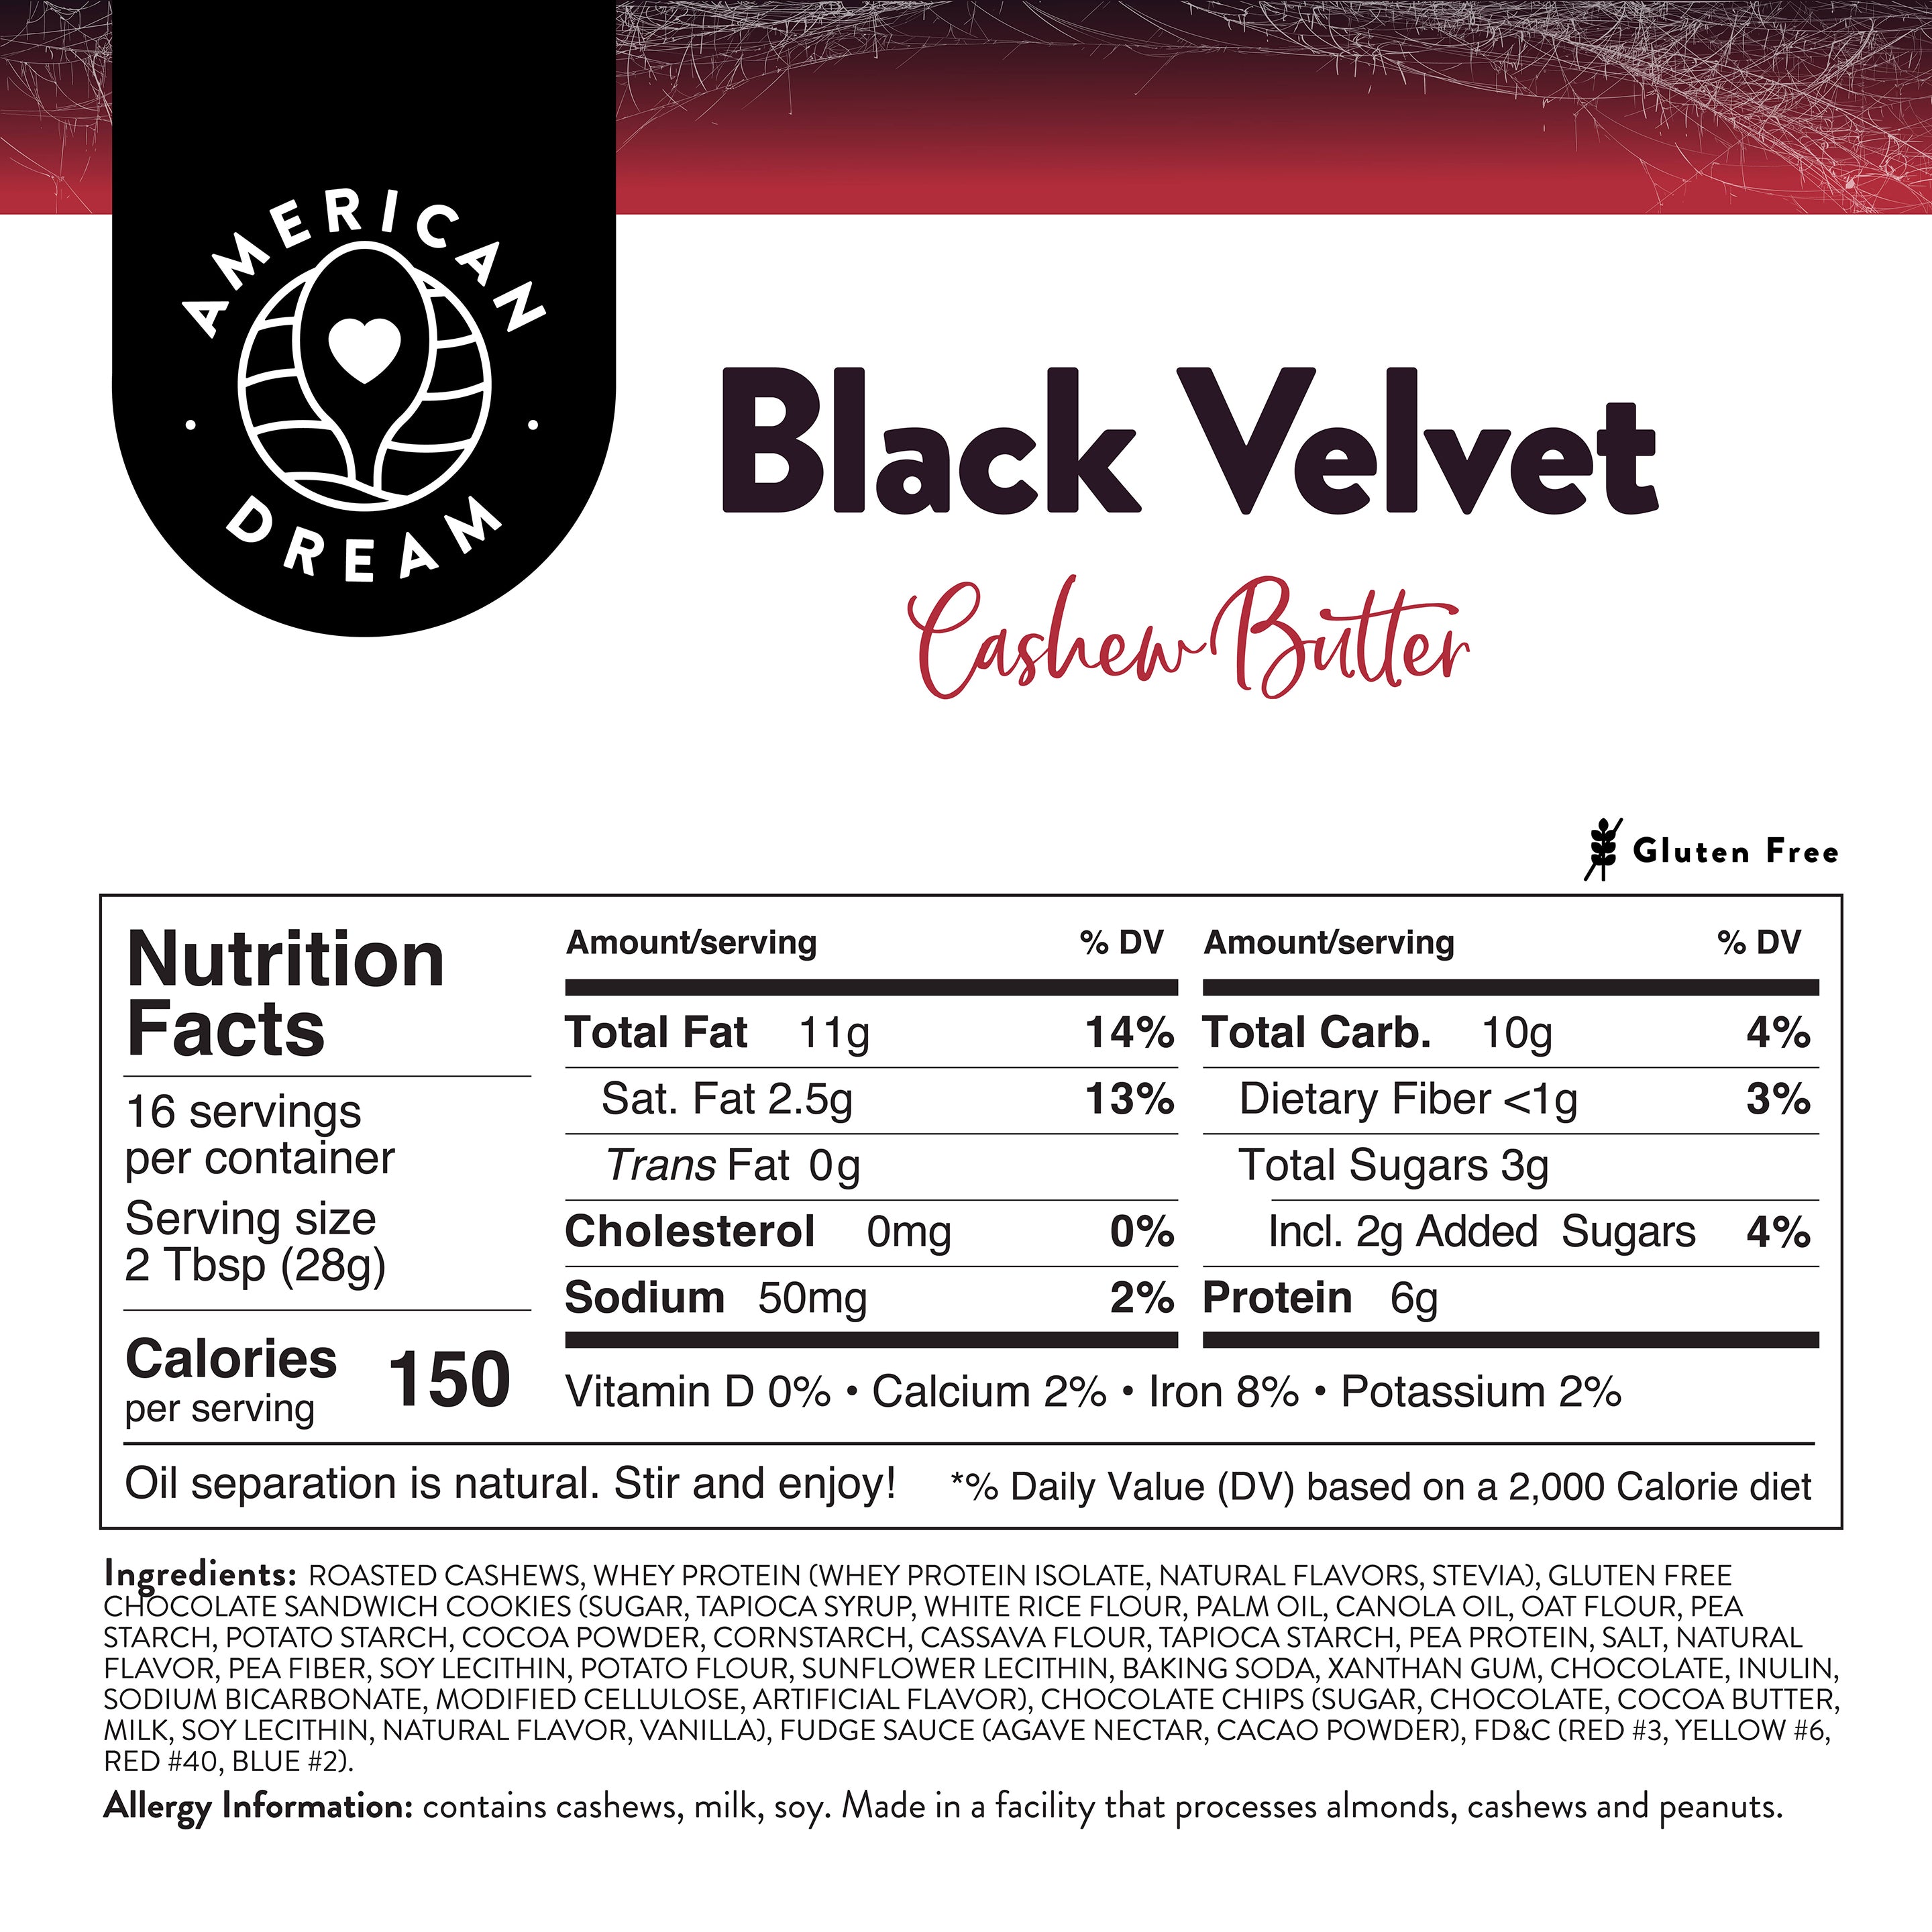 Gluten- Free Black Velvet Cashew Butter